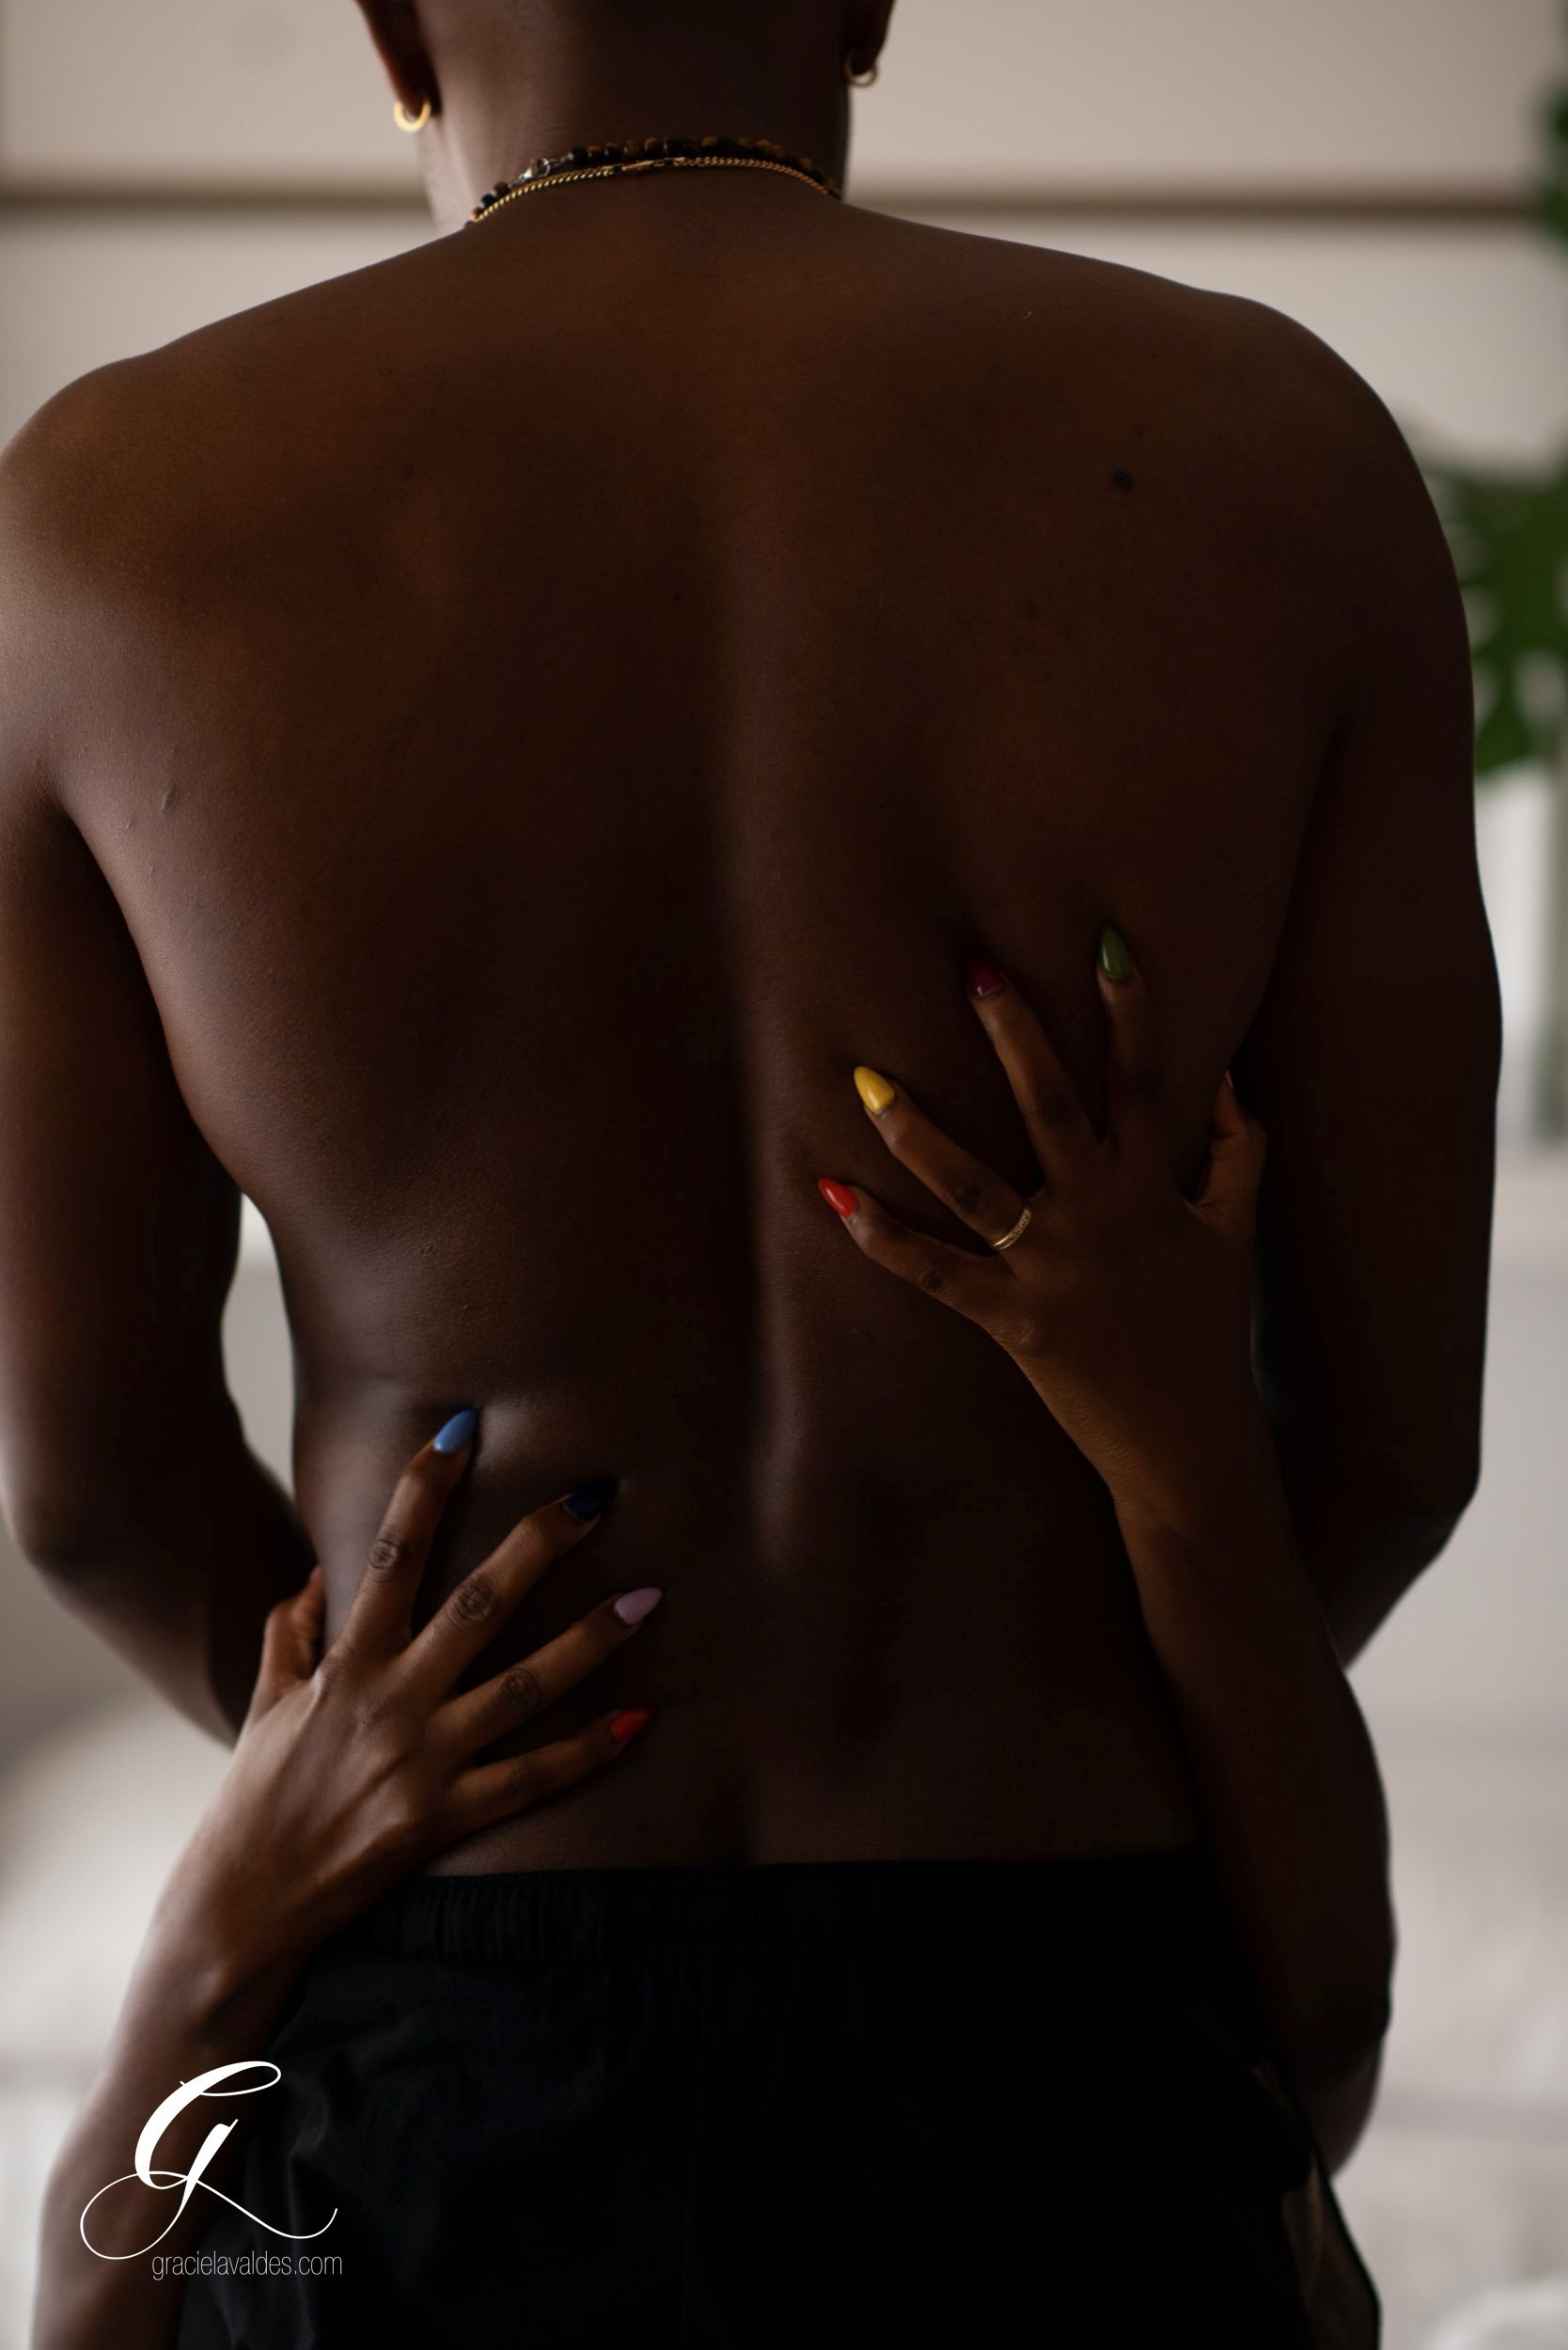 jamaican black couples boudoir portraits by graciela valdes 8.jpg